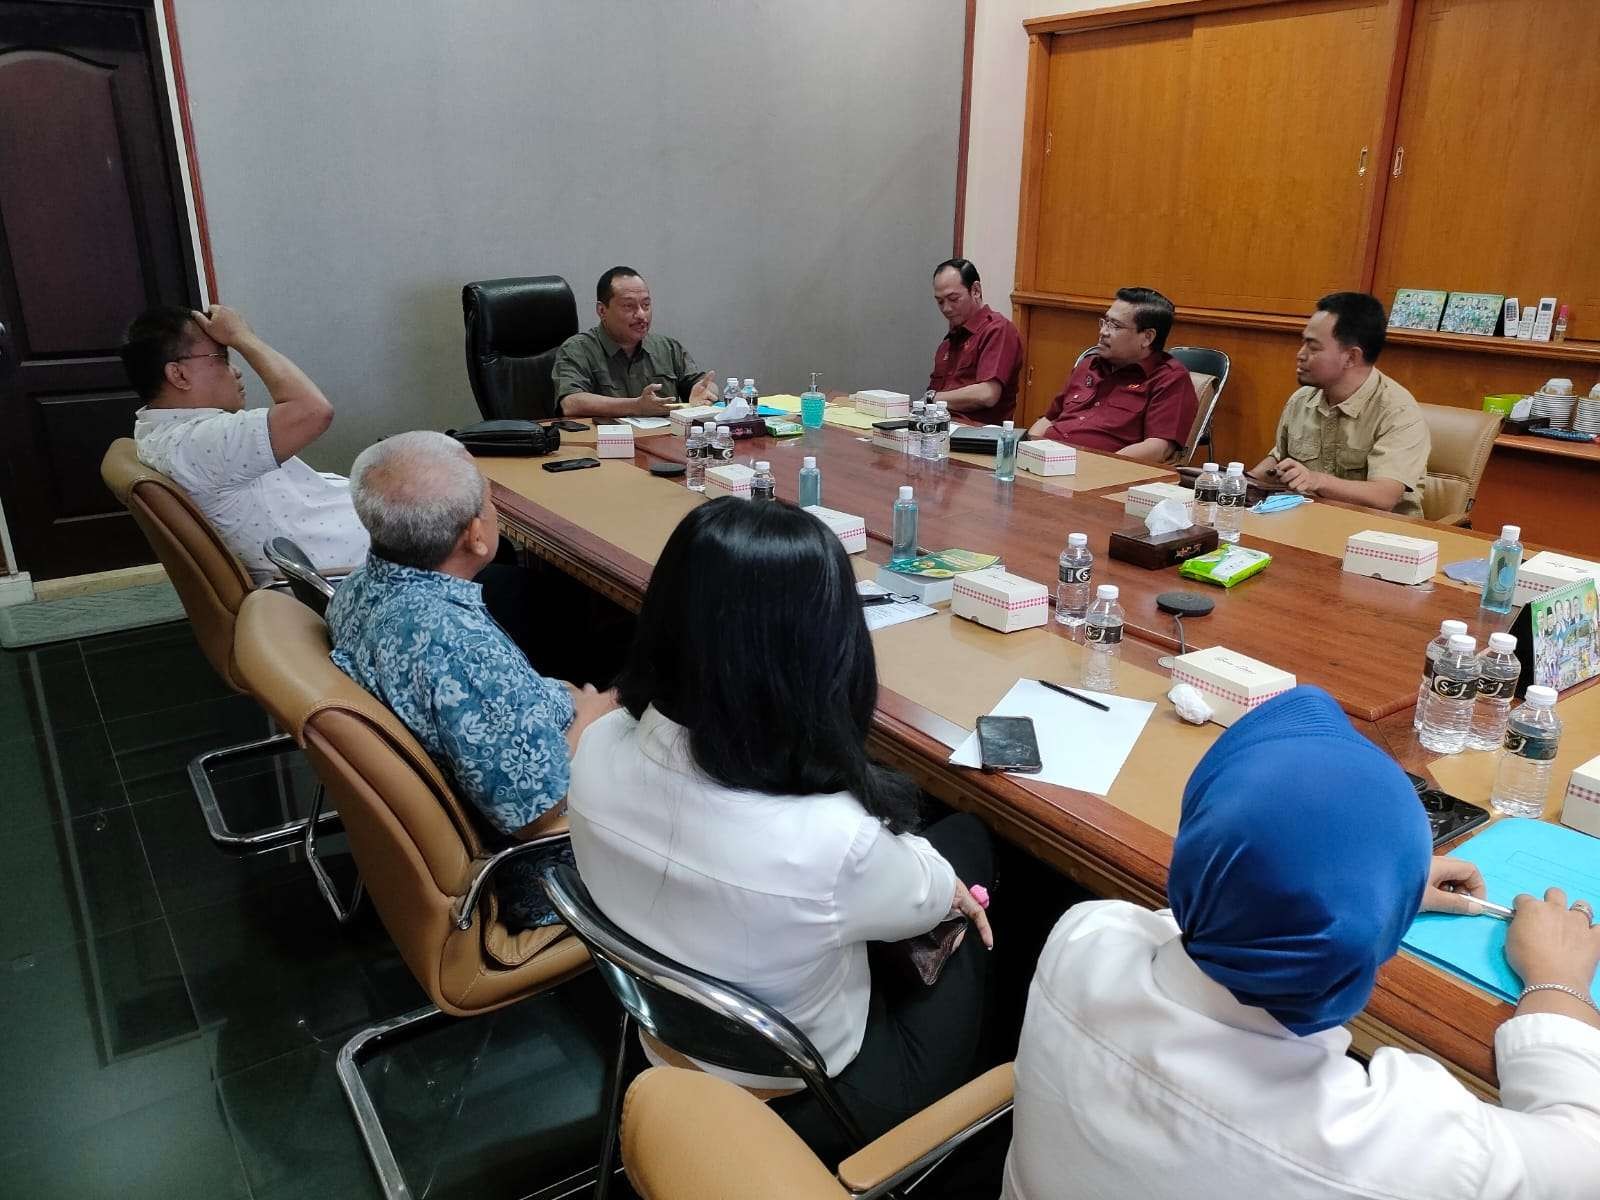 Ketua KONI Jatim M Nabil (tengah) saat menerima kunjungan KONI Jateng di Surabaya, Kamis 27 Juli 2022. (Foto: Istimewa)